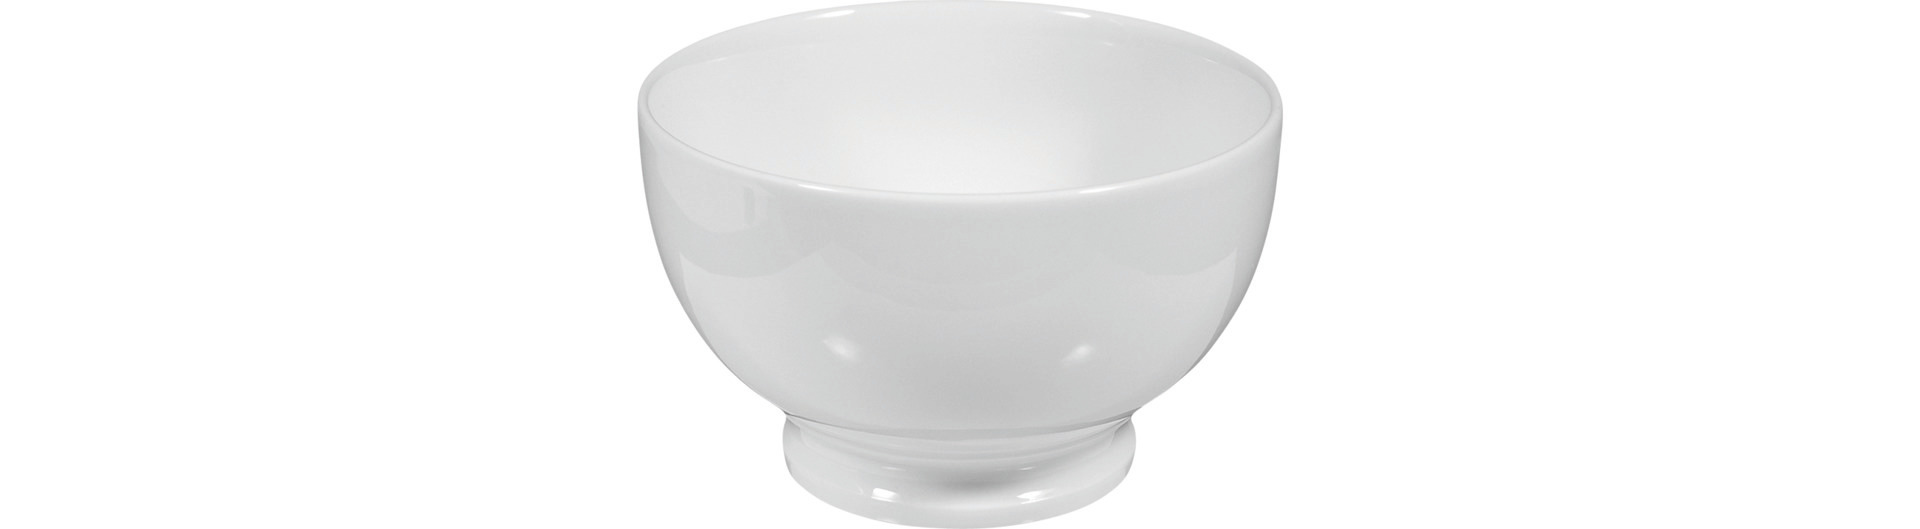 Bowl 130 mm / 0,60 l weiß uni (1060)